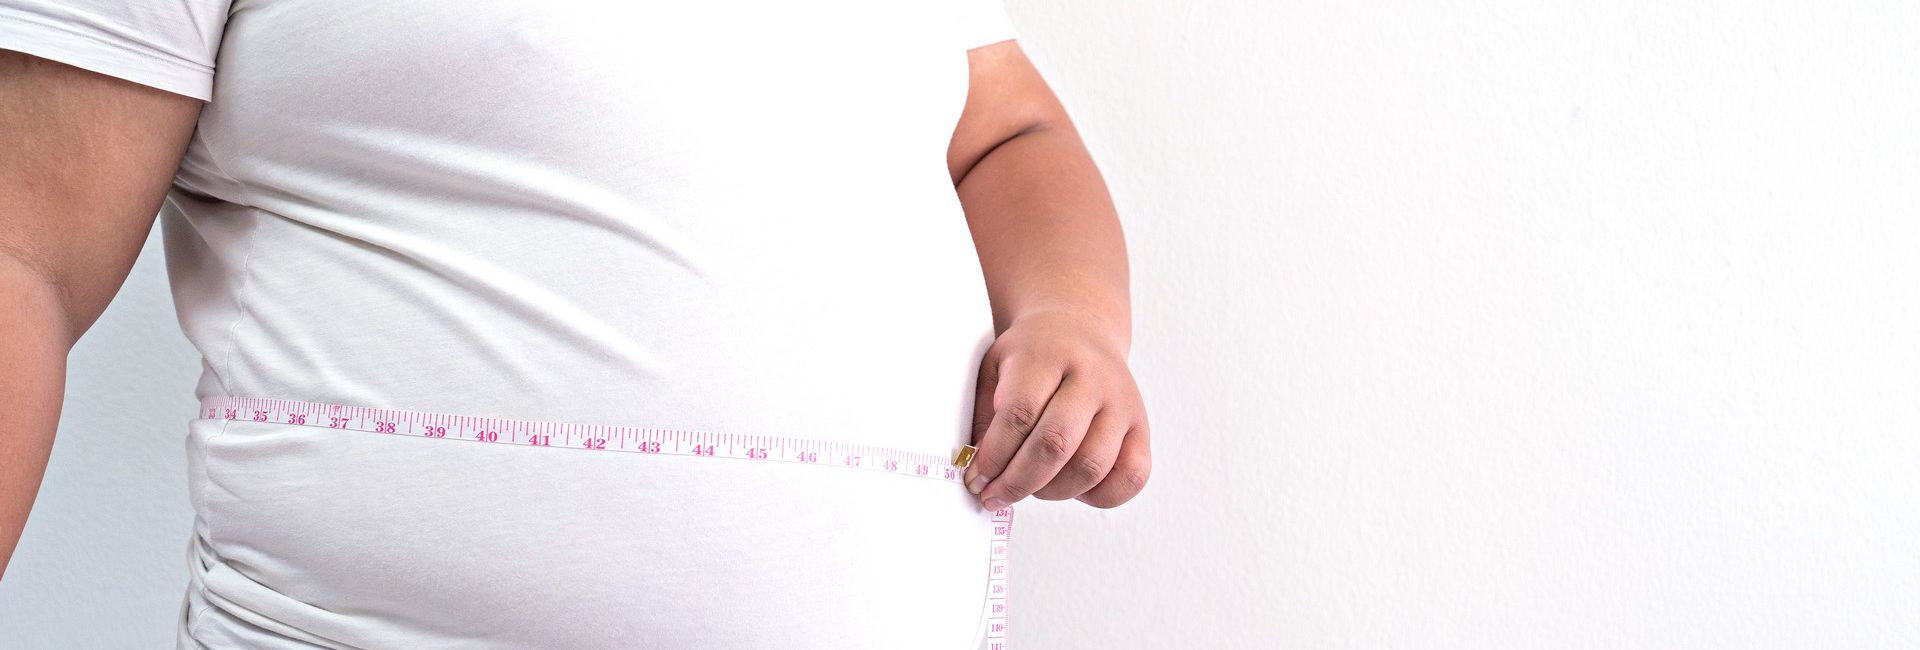 Tratamento Compulsão Alimentar e Obesidade